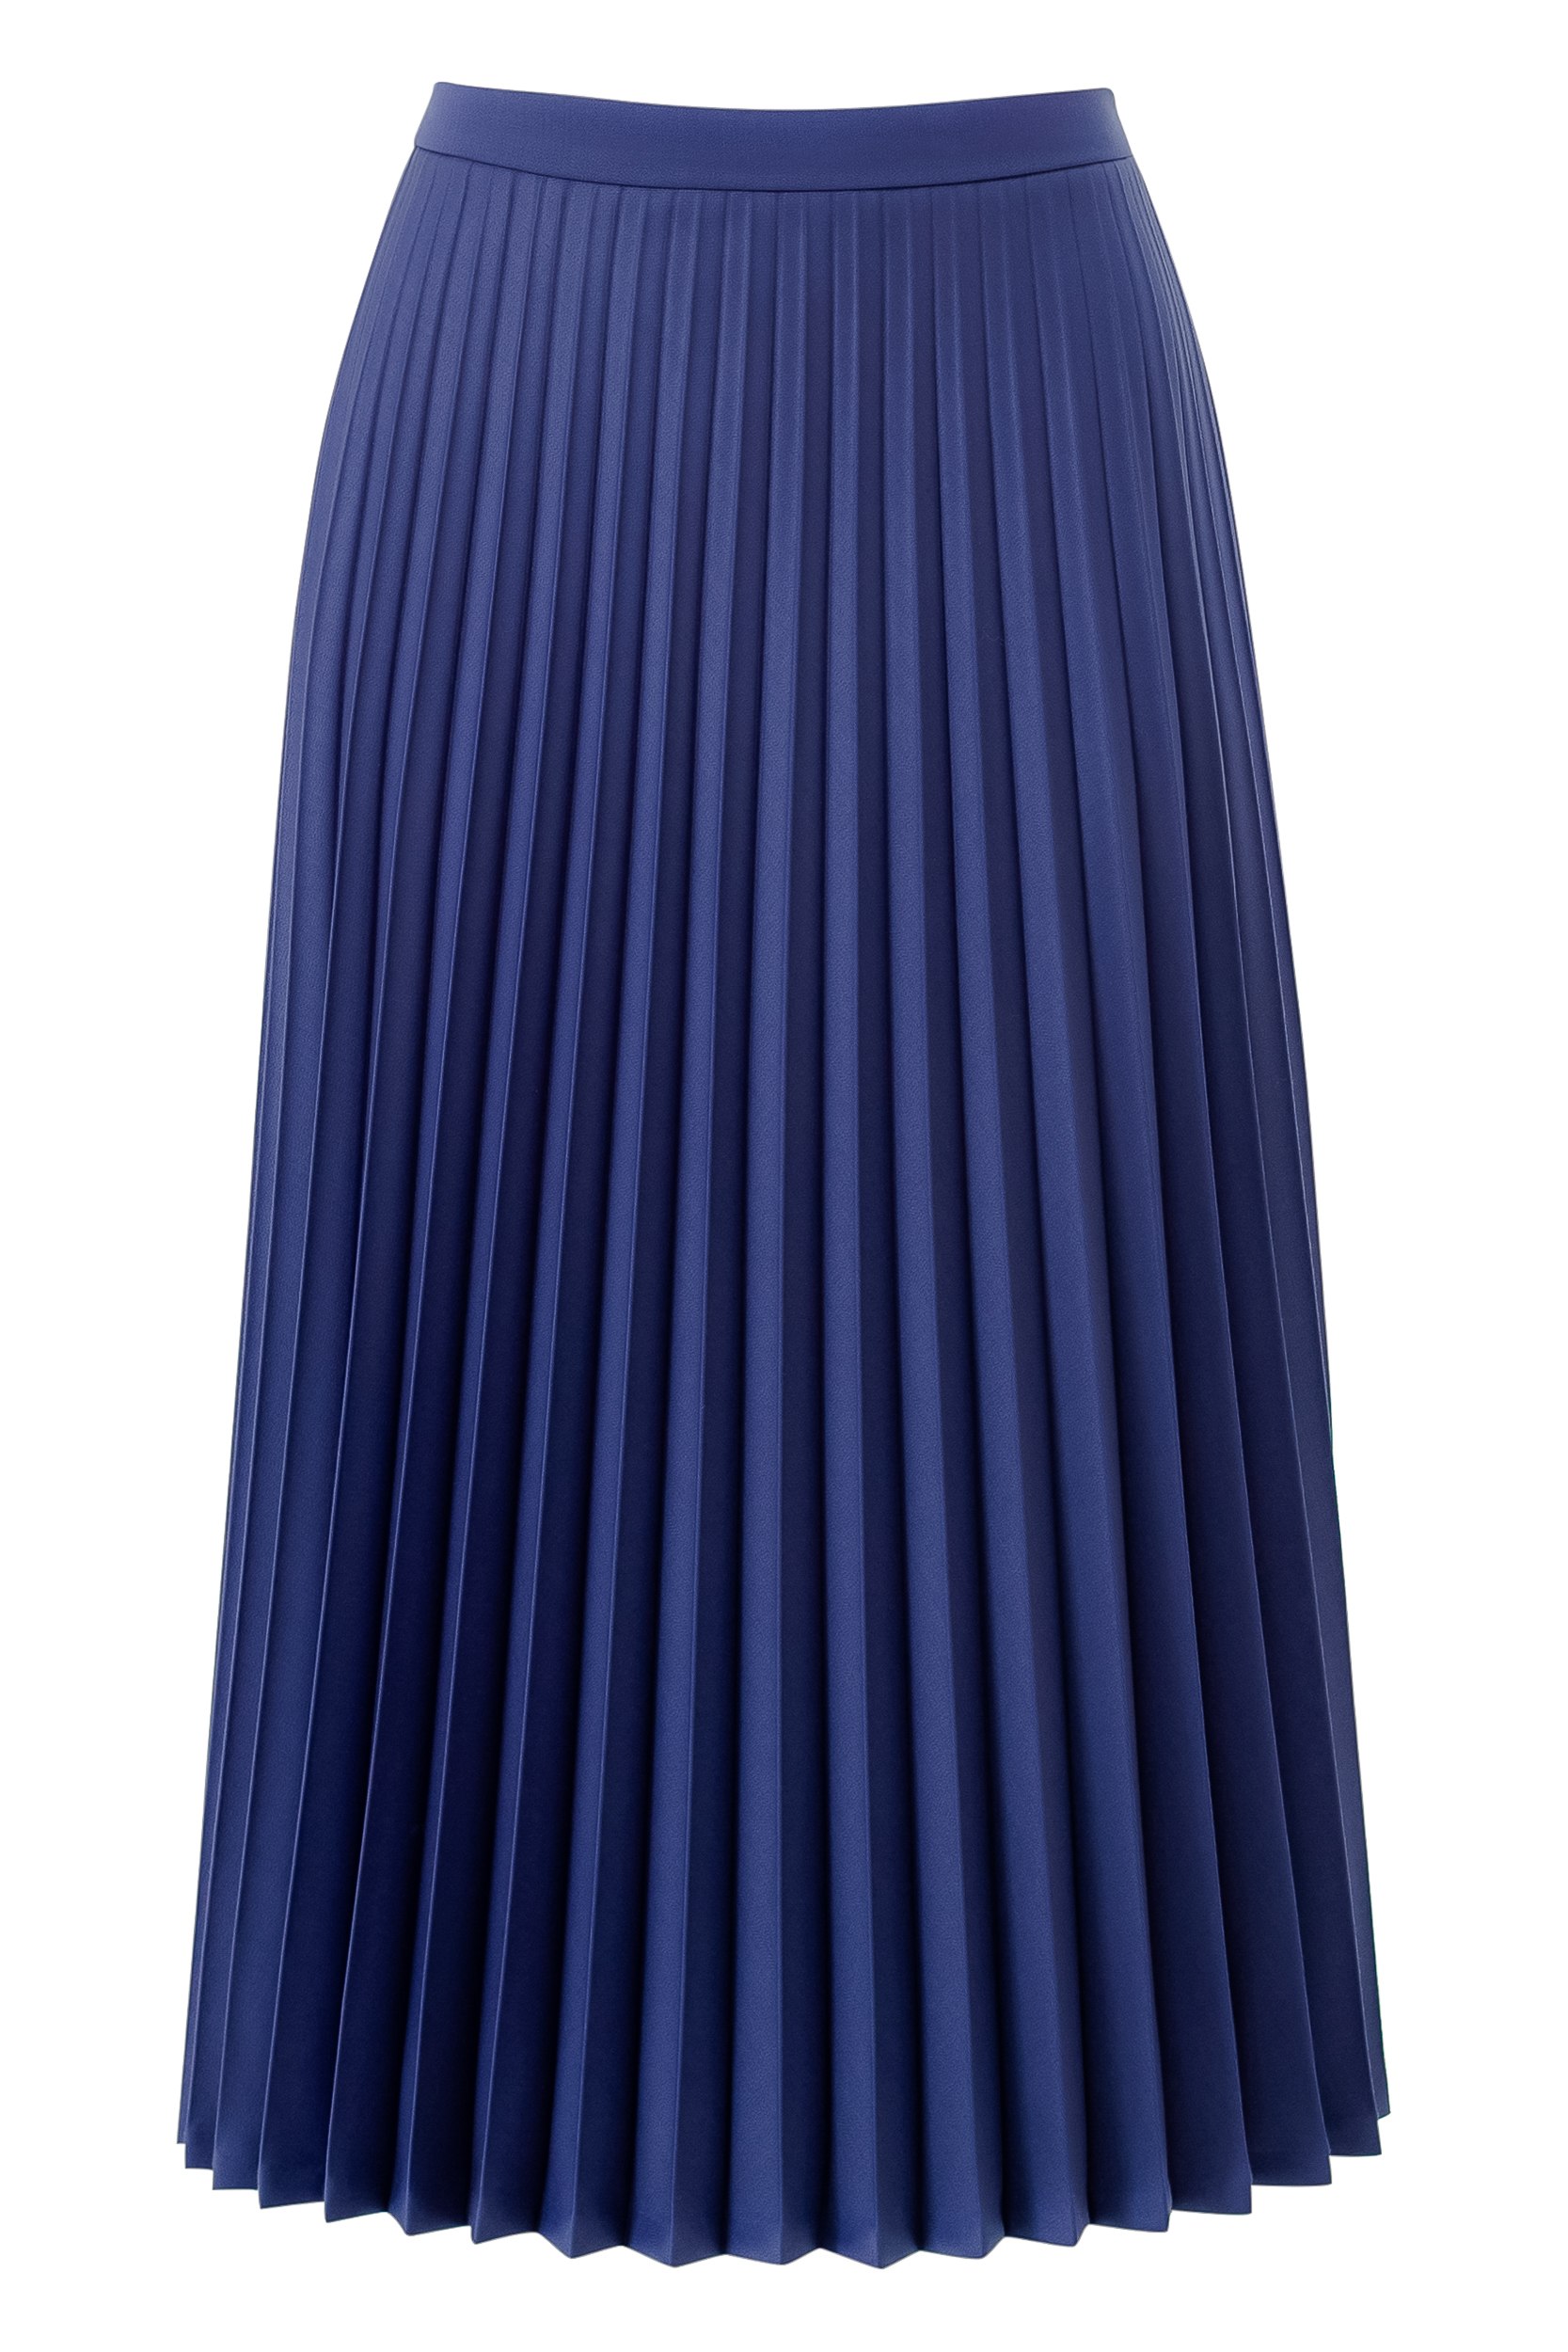 Фенди юбка плиссированная синяя